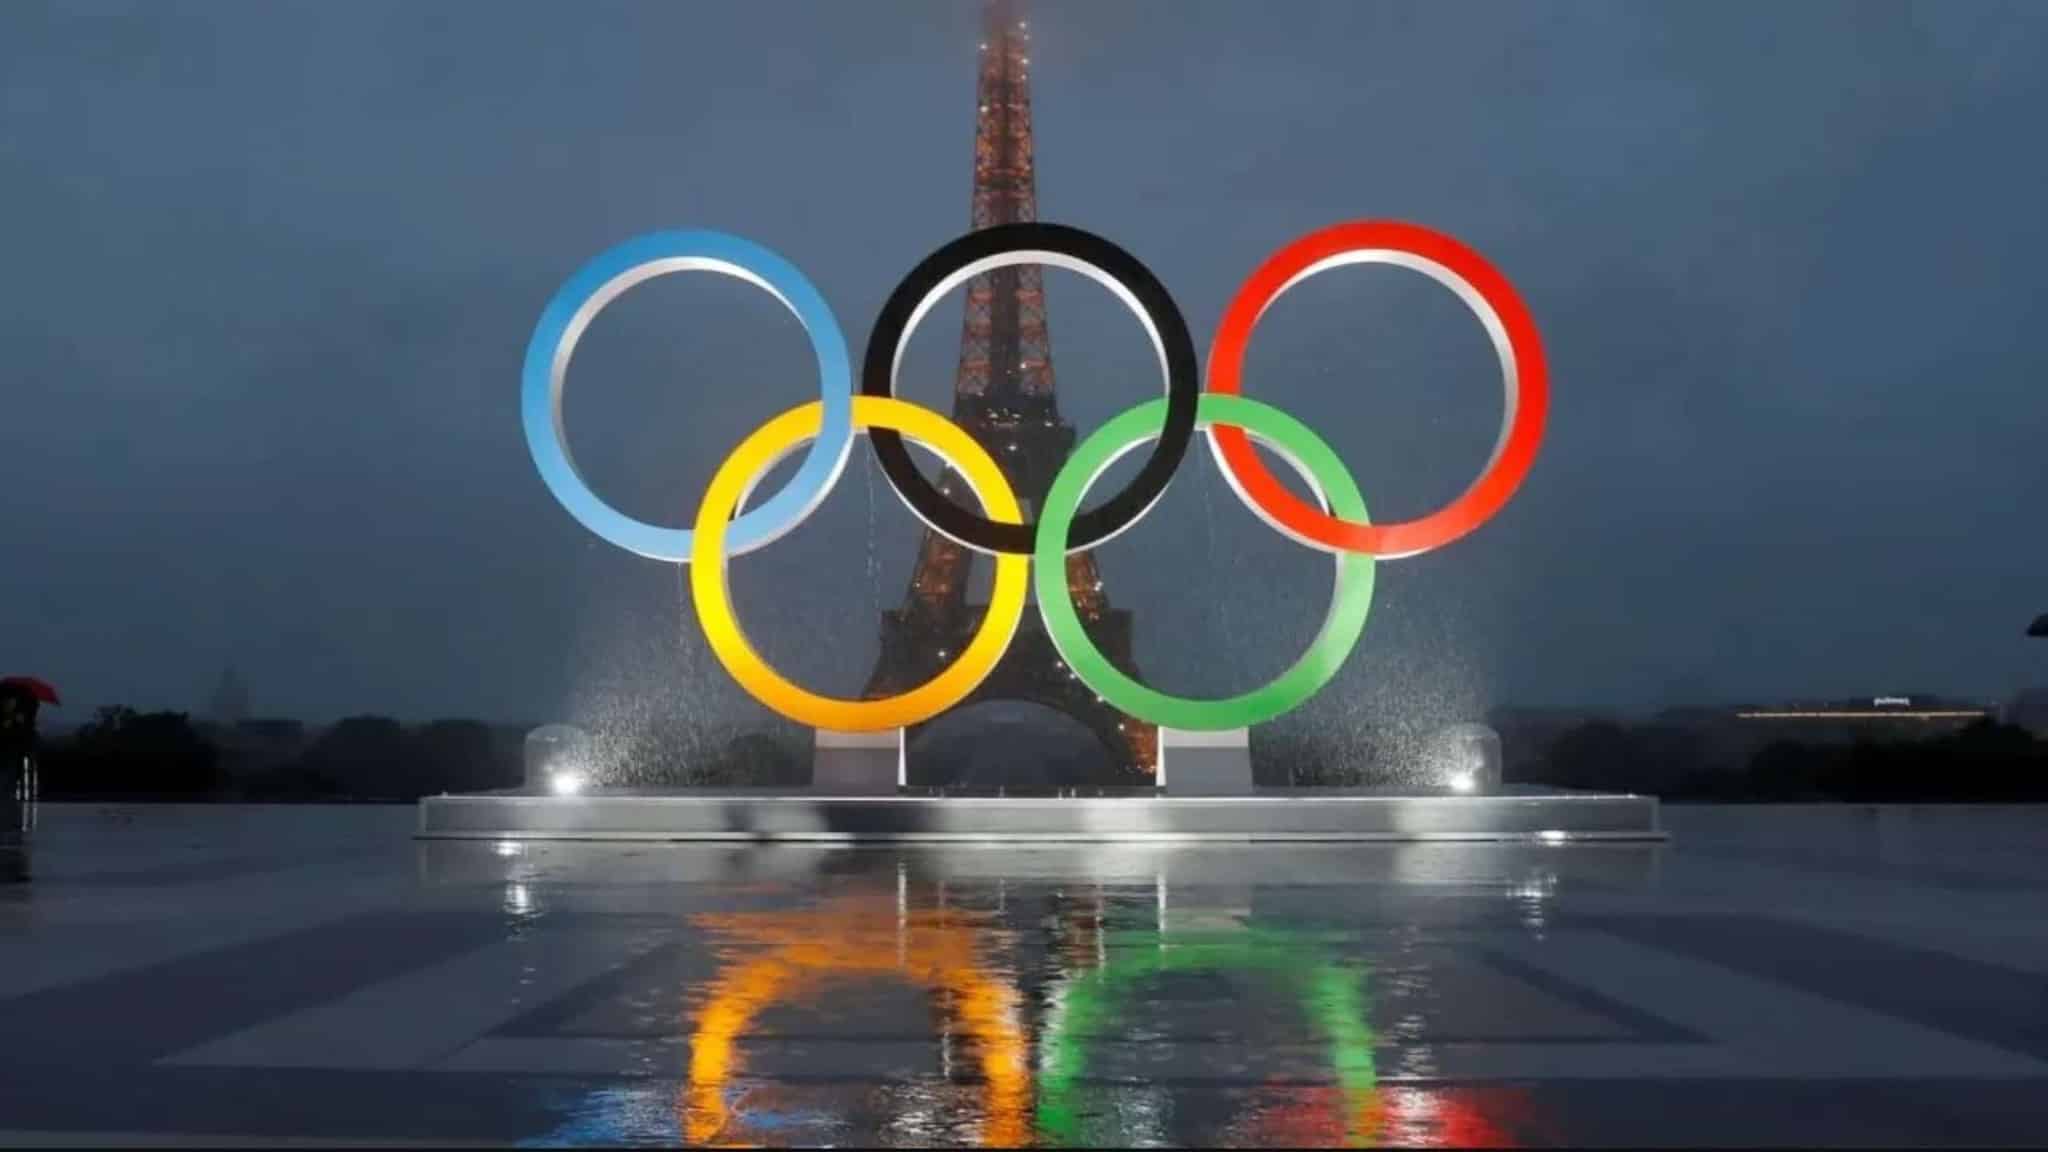 Jeux olympiques de paris 2024 : quelle est la logistique urbaine mise en place ?